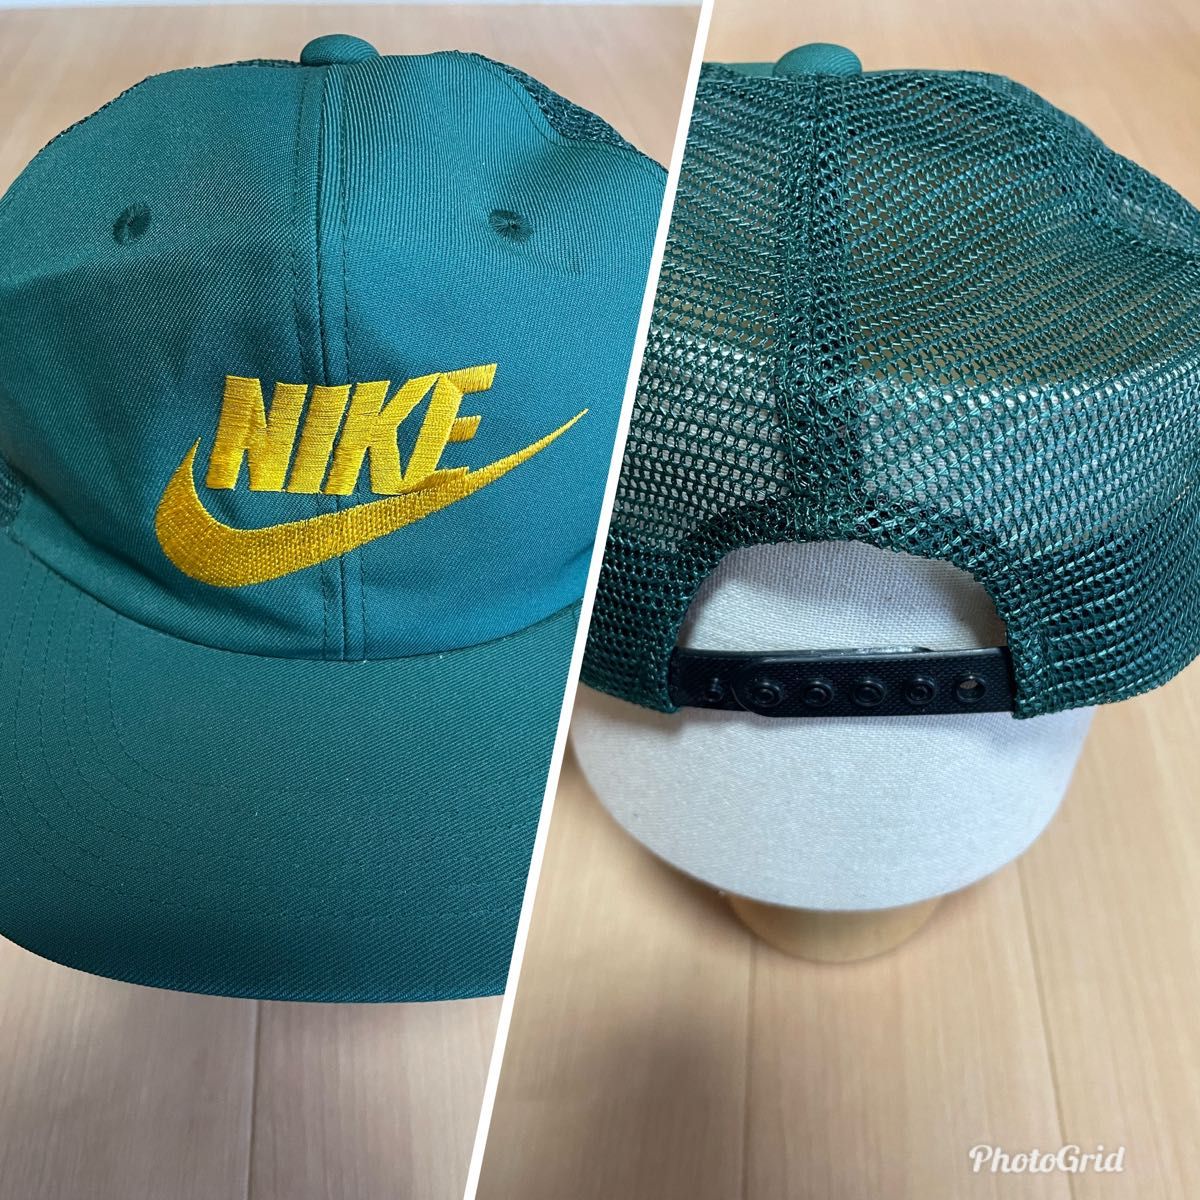 Nike ナイキ 90s オリジナル キャップ cap 帽子 ヴィンテージ デットストック